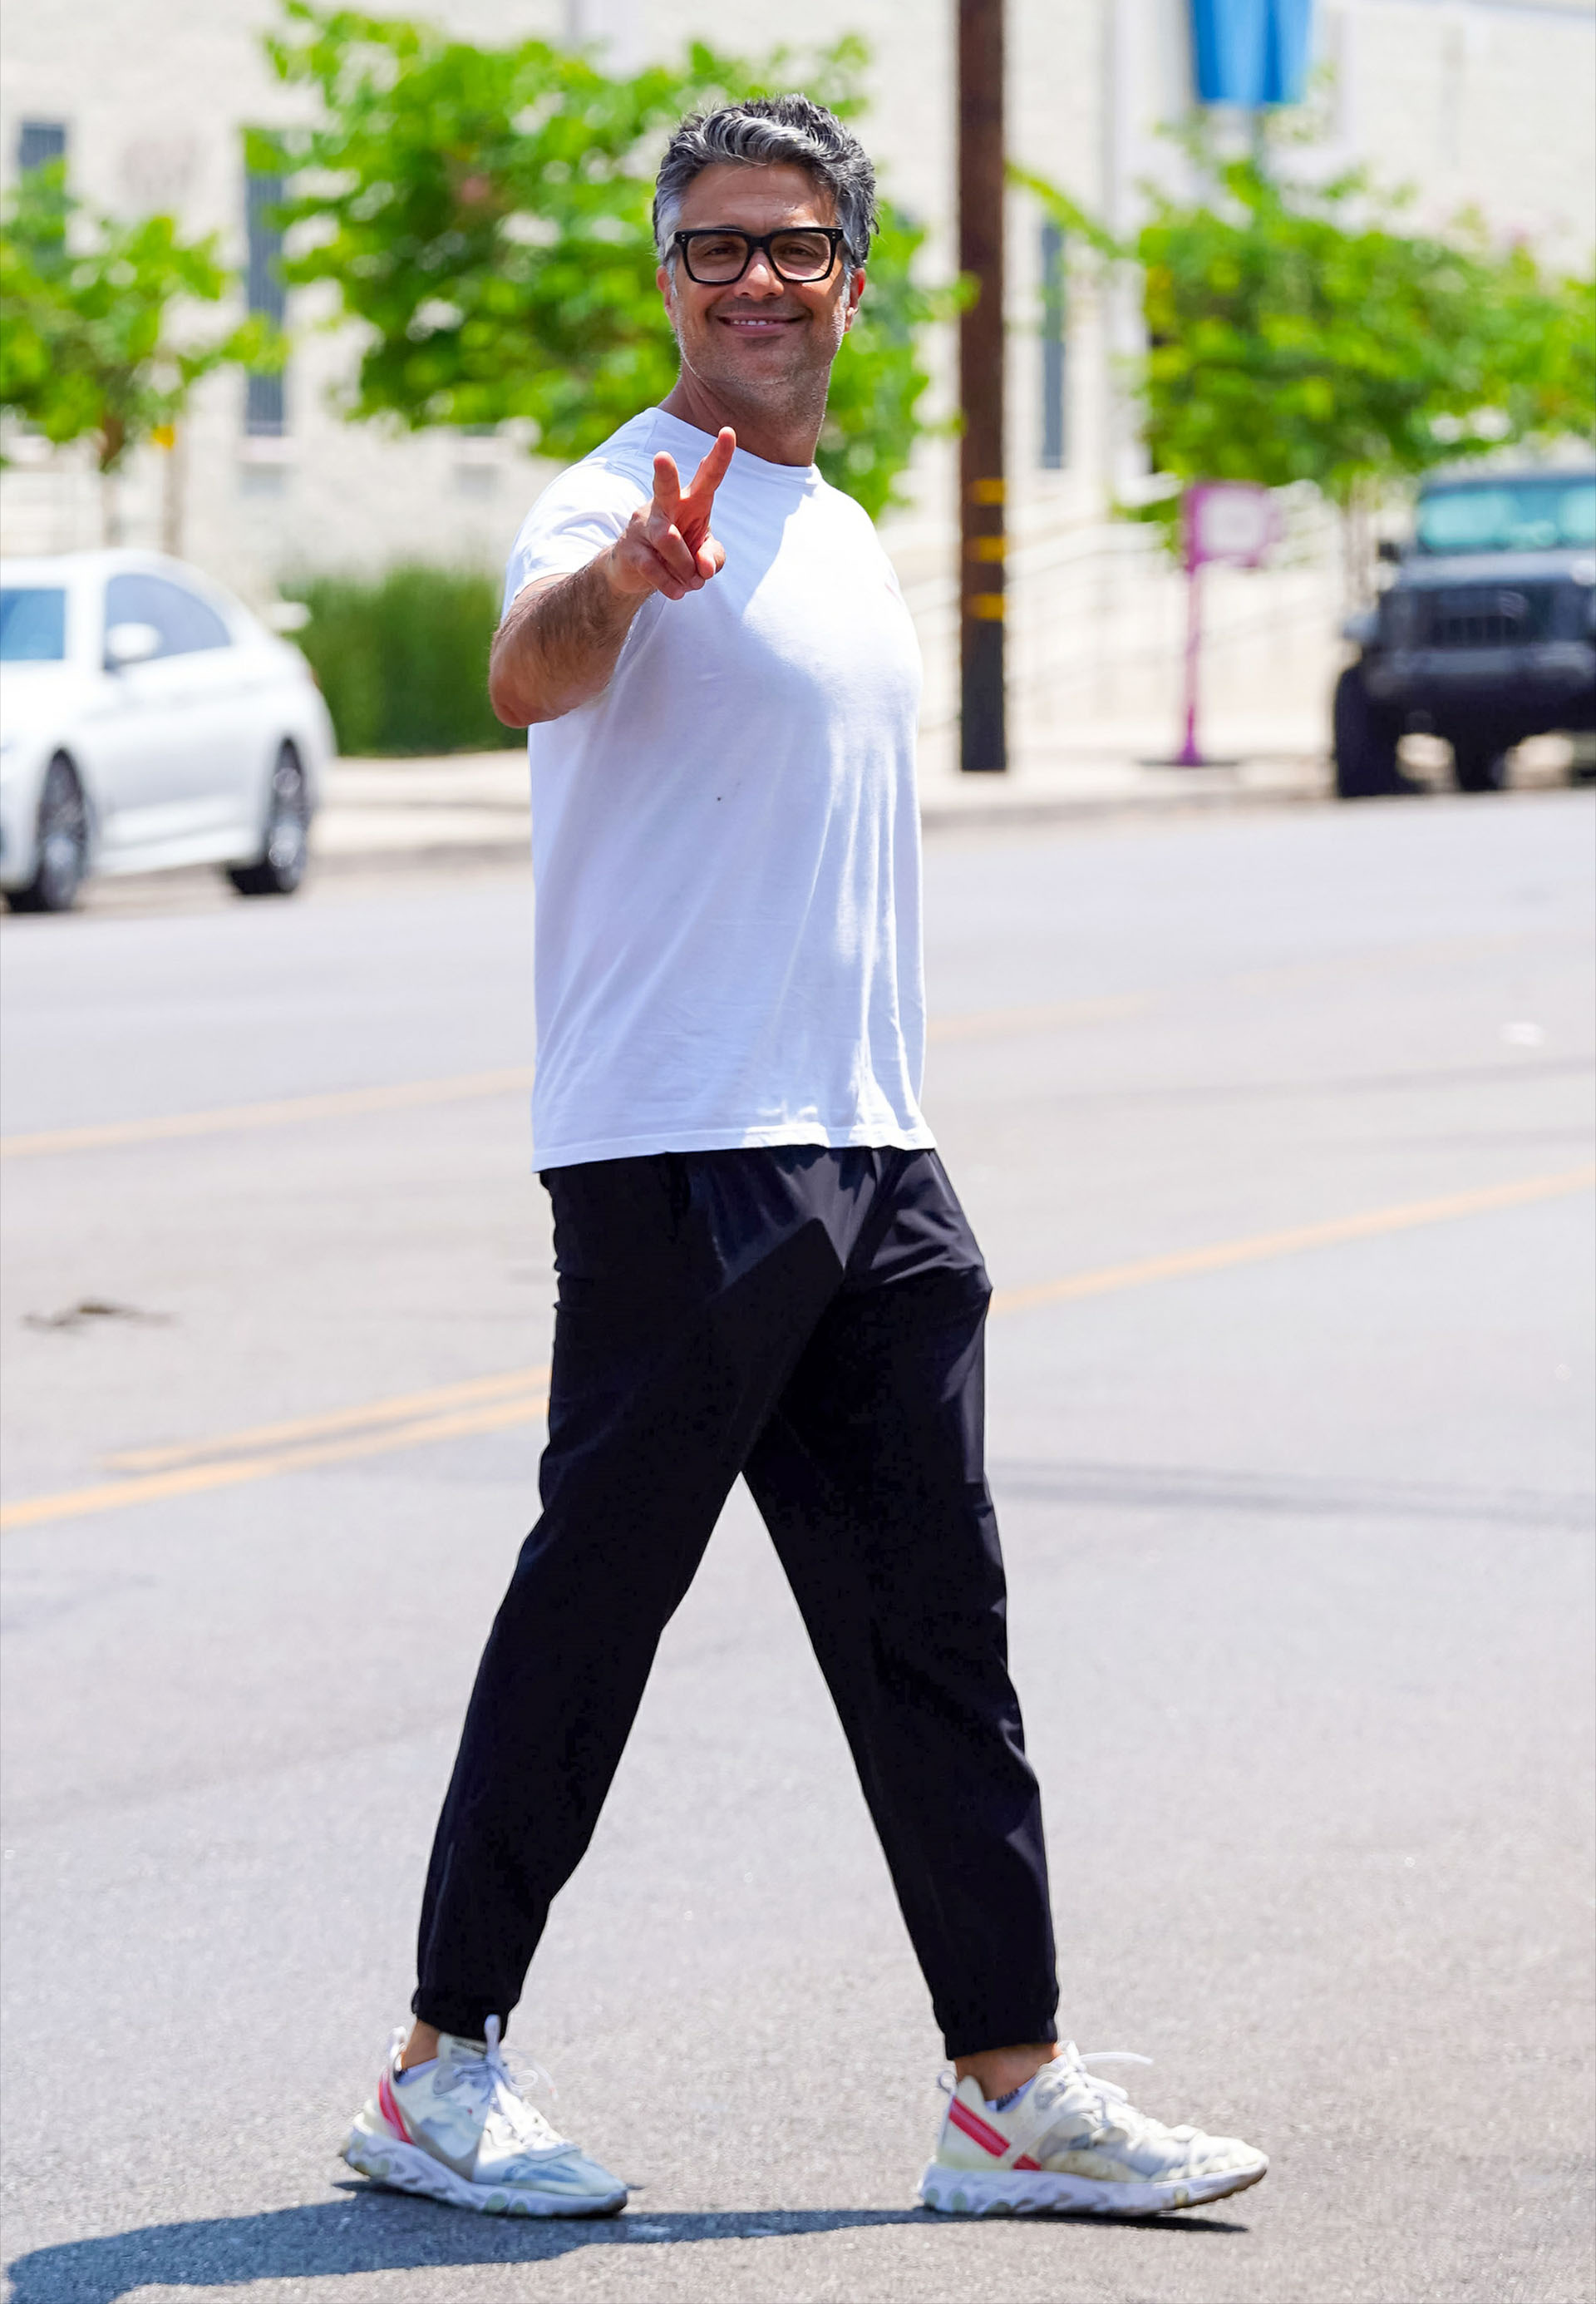 Jaime Camil saludó a los fotógrafos que lo encontraron paseando por las calles de North Hollywood, Los Ángeles. El actor lució un pantalón negro, zapatillas deportivas y una remera blanca